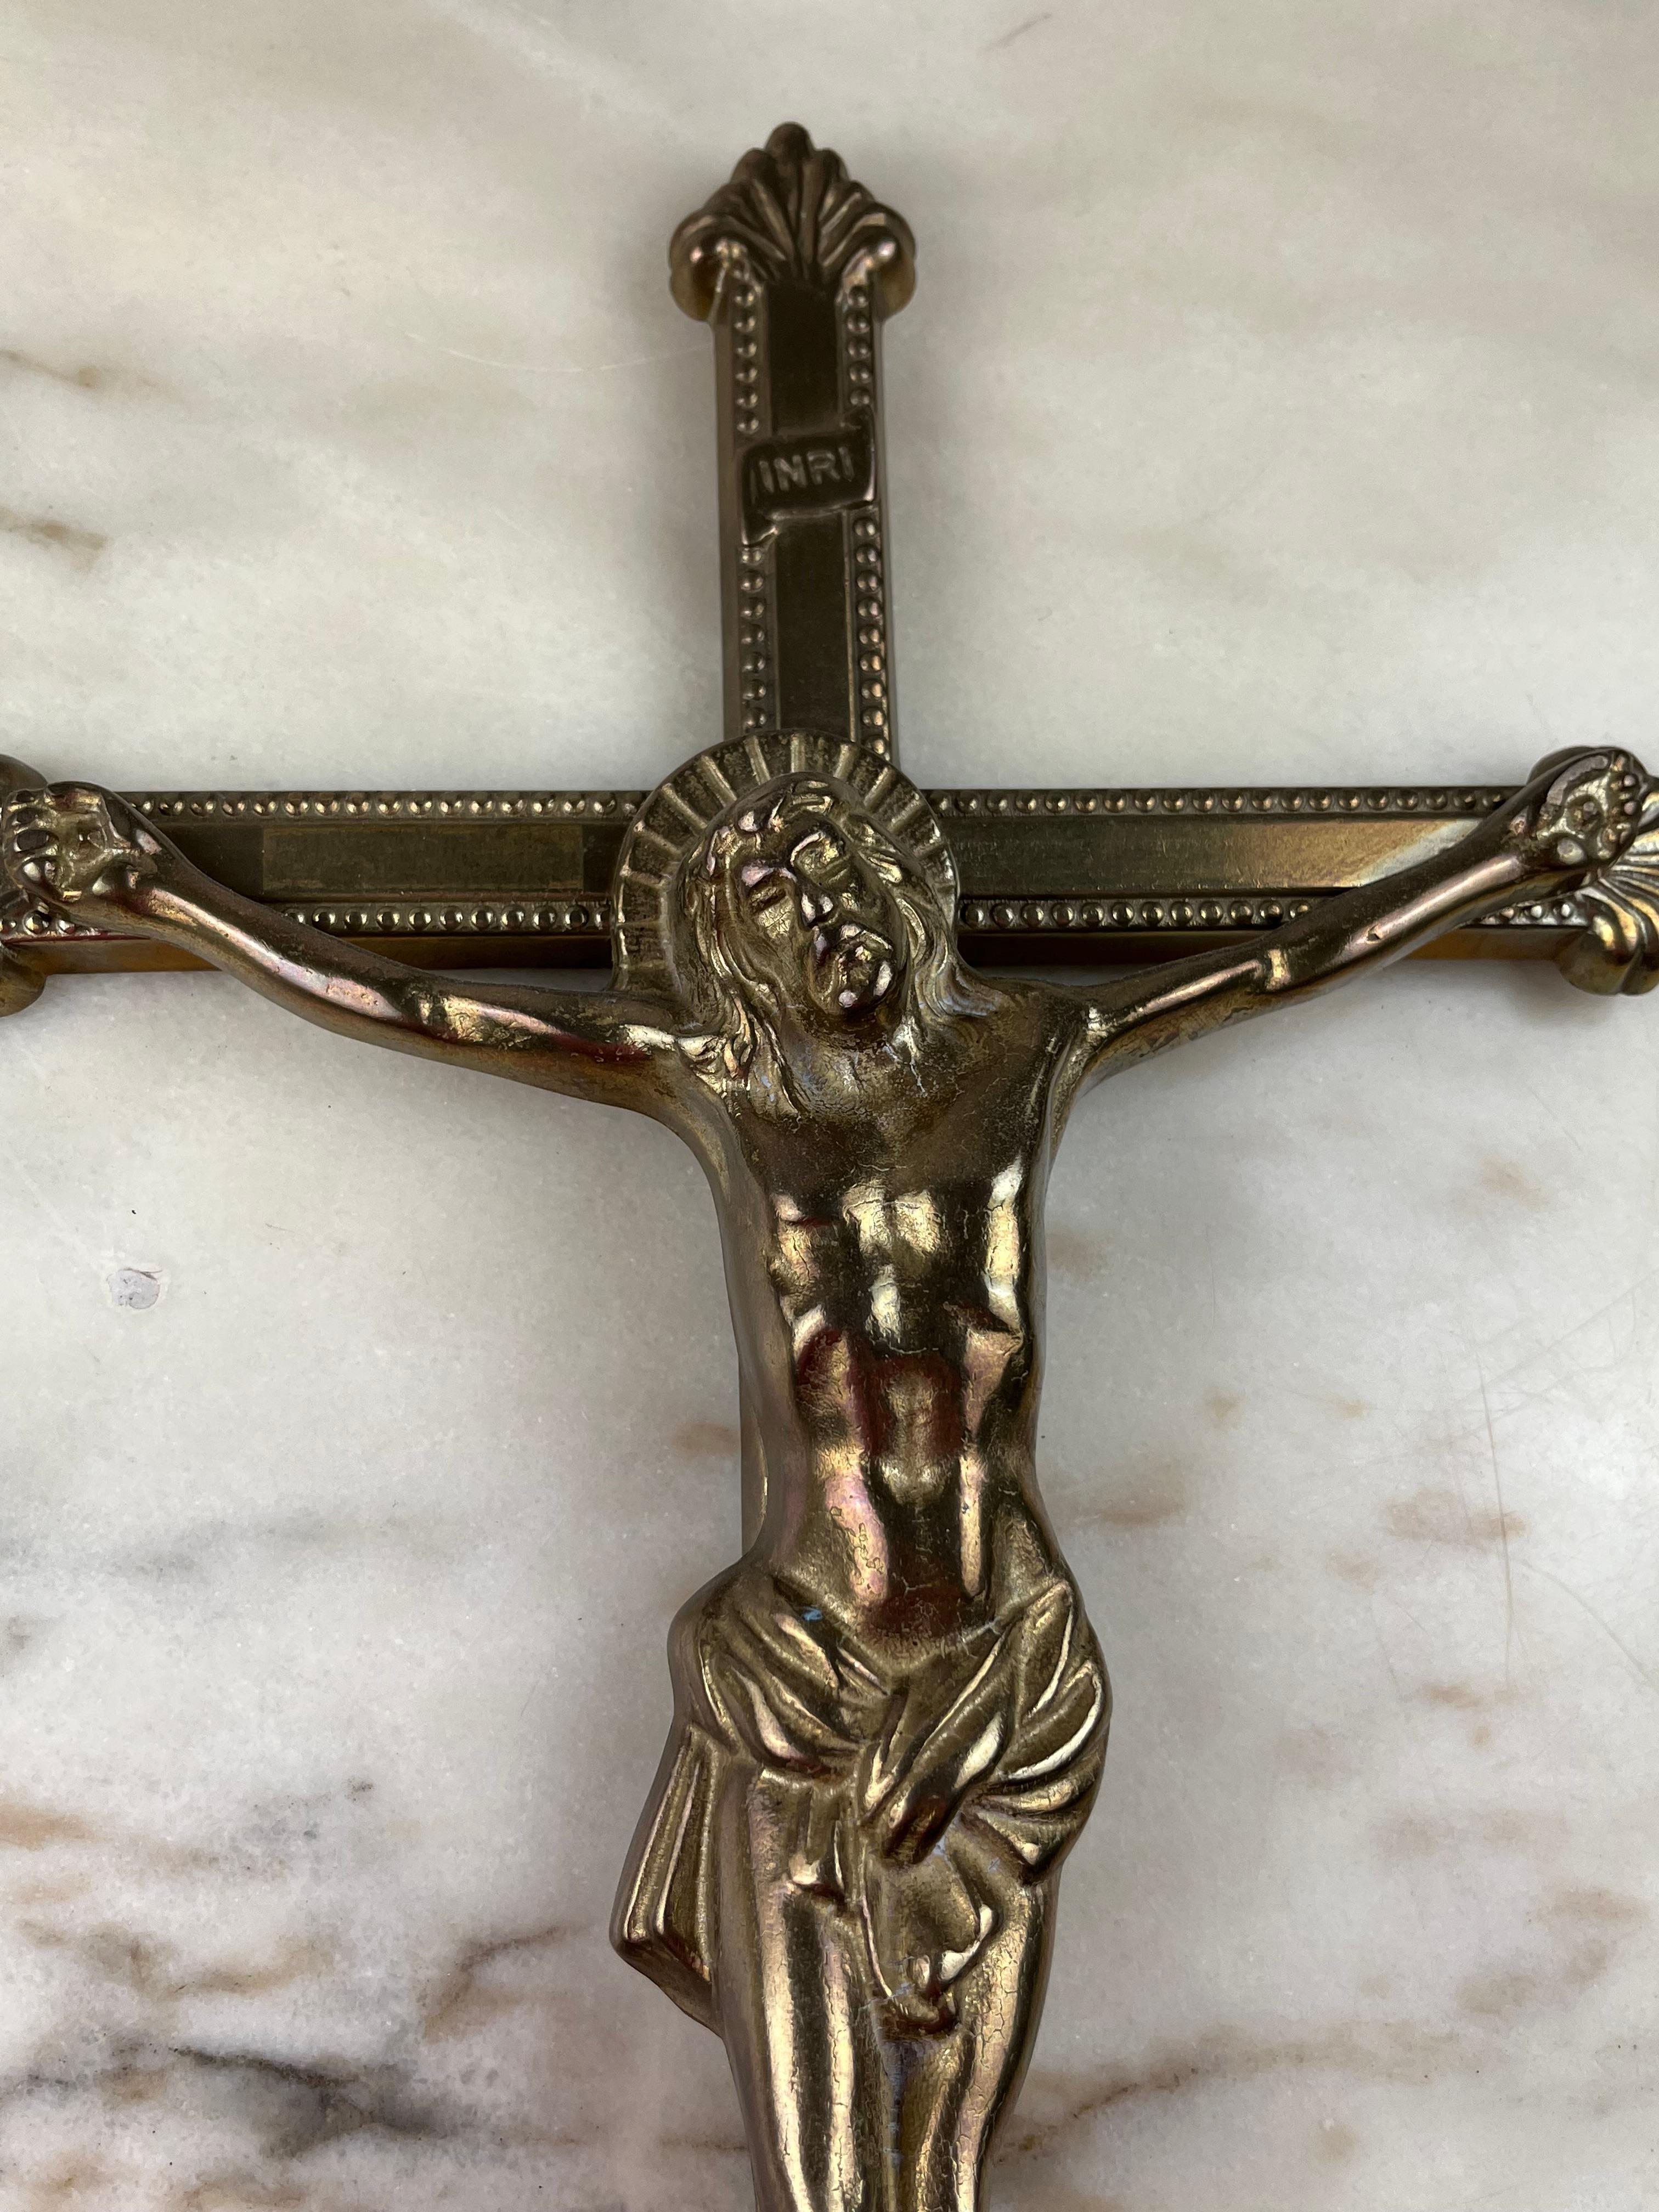 Kruzifix aus Messing, Italien, 1960er Jahre
Es gehörte einer älteren Tante meiner Eltern.
Kleine Zeichen der Zeit.